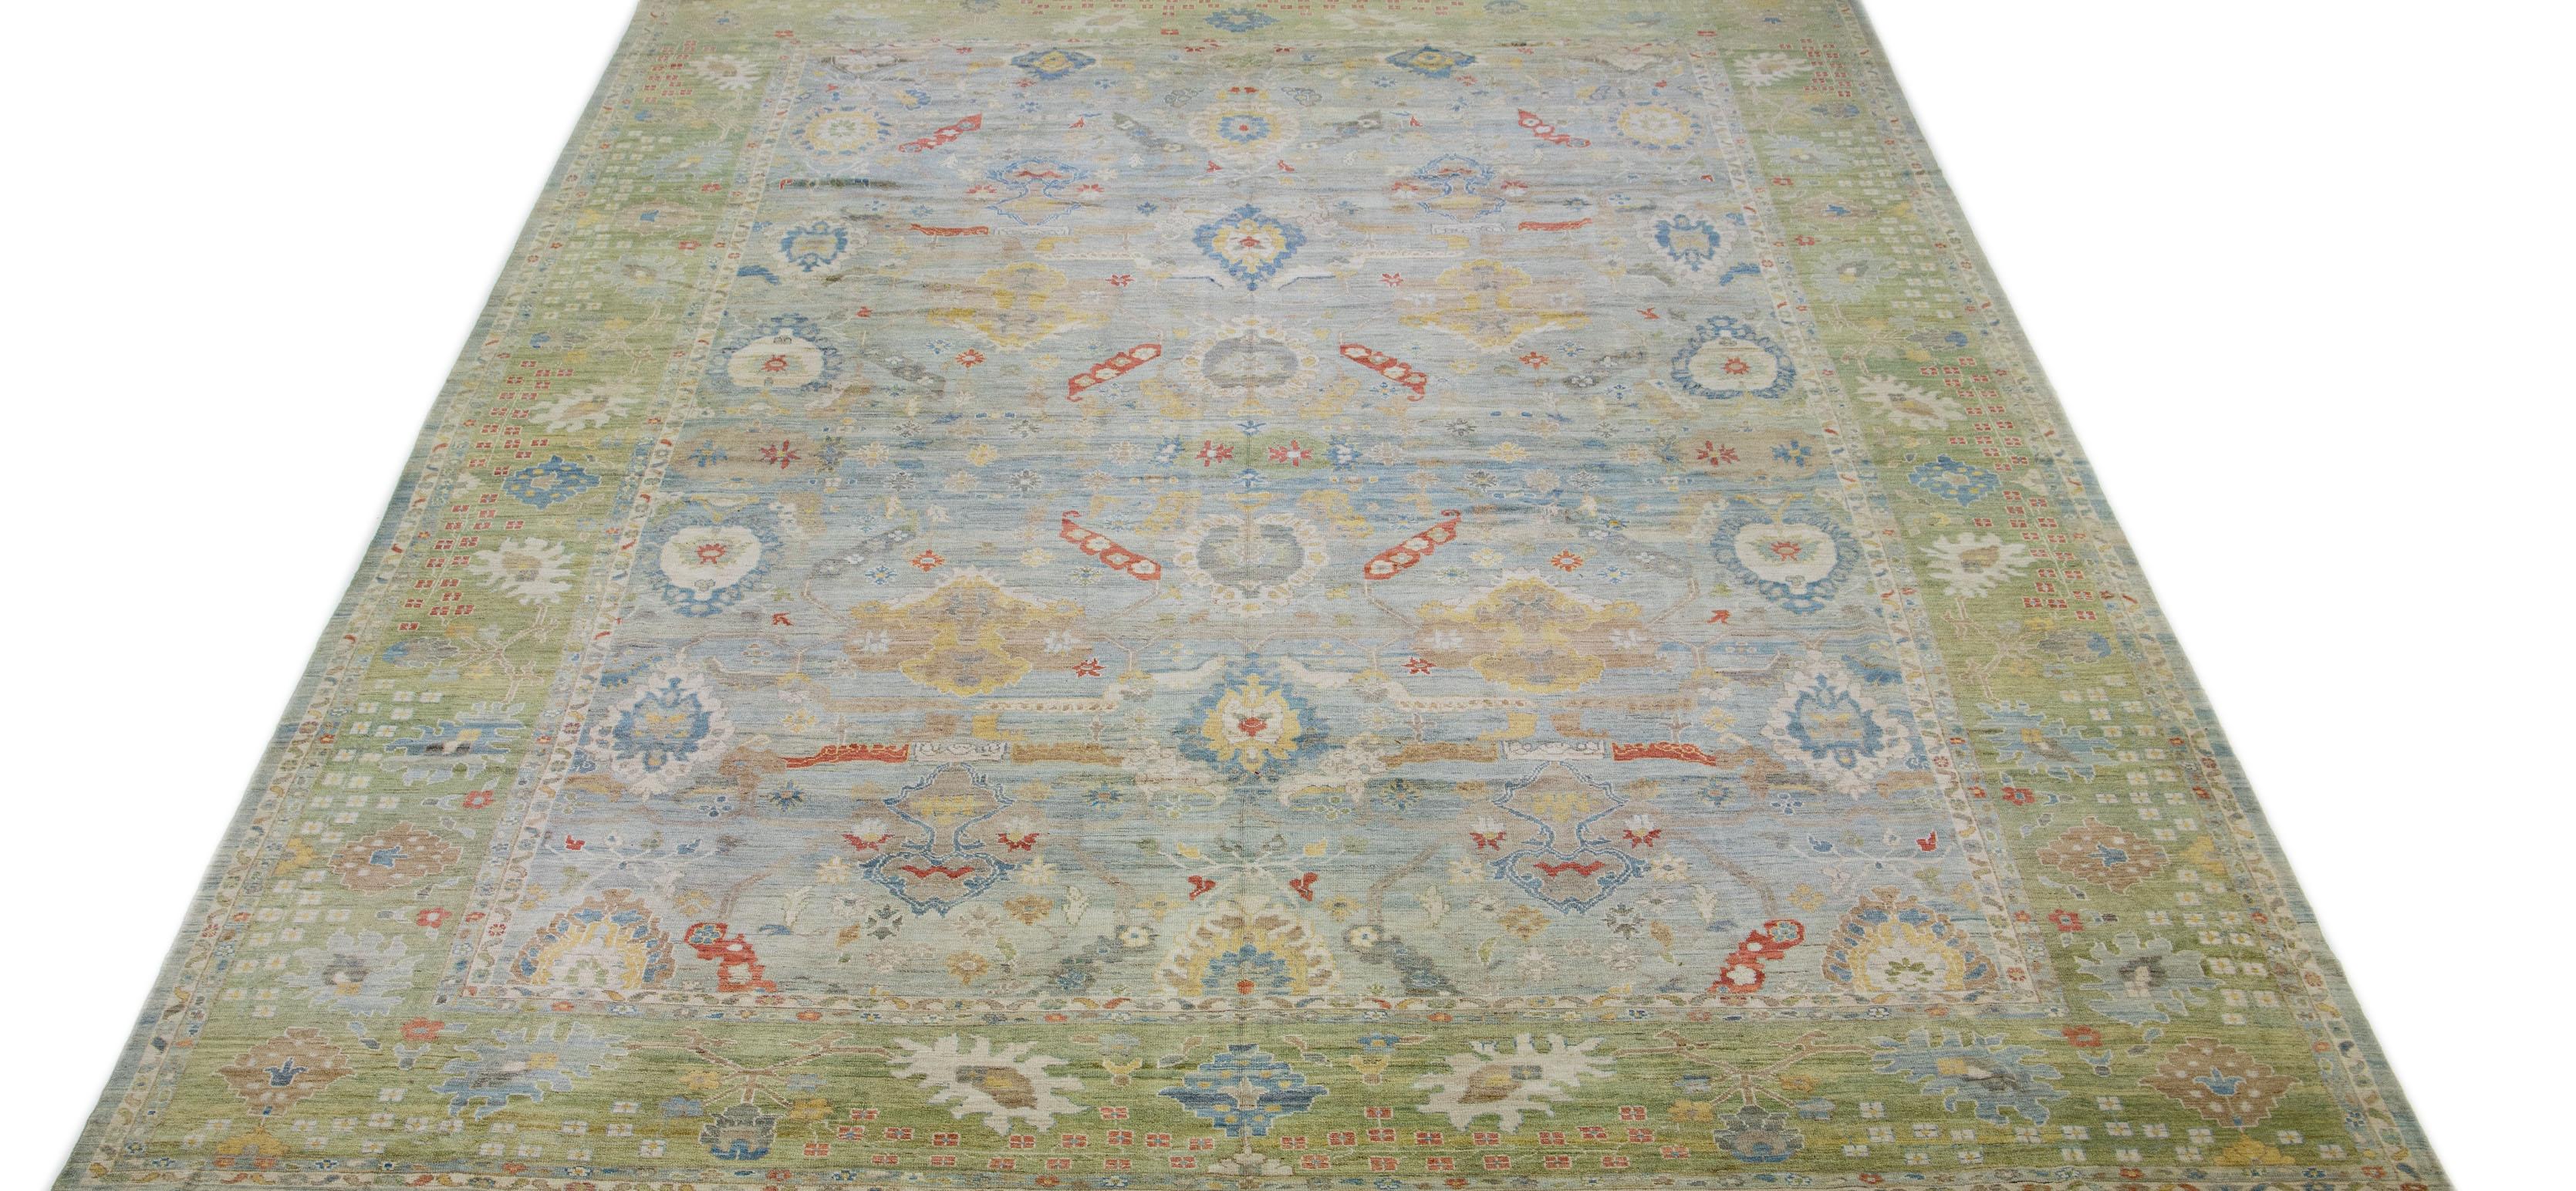 Cette version contemporaine du style traditionnel de Sultanabad est présentée dans un exquis tapis de laine noué à la main, d'un bleu clair saisissant. Un cadre au design complexe met en valeur le motif floral qui recouvre l'ensemble, orné d'accents